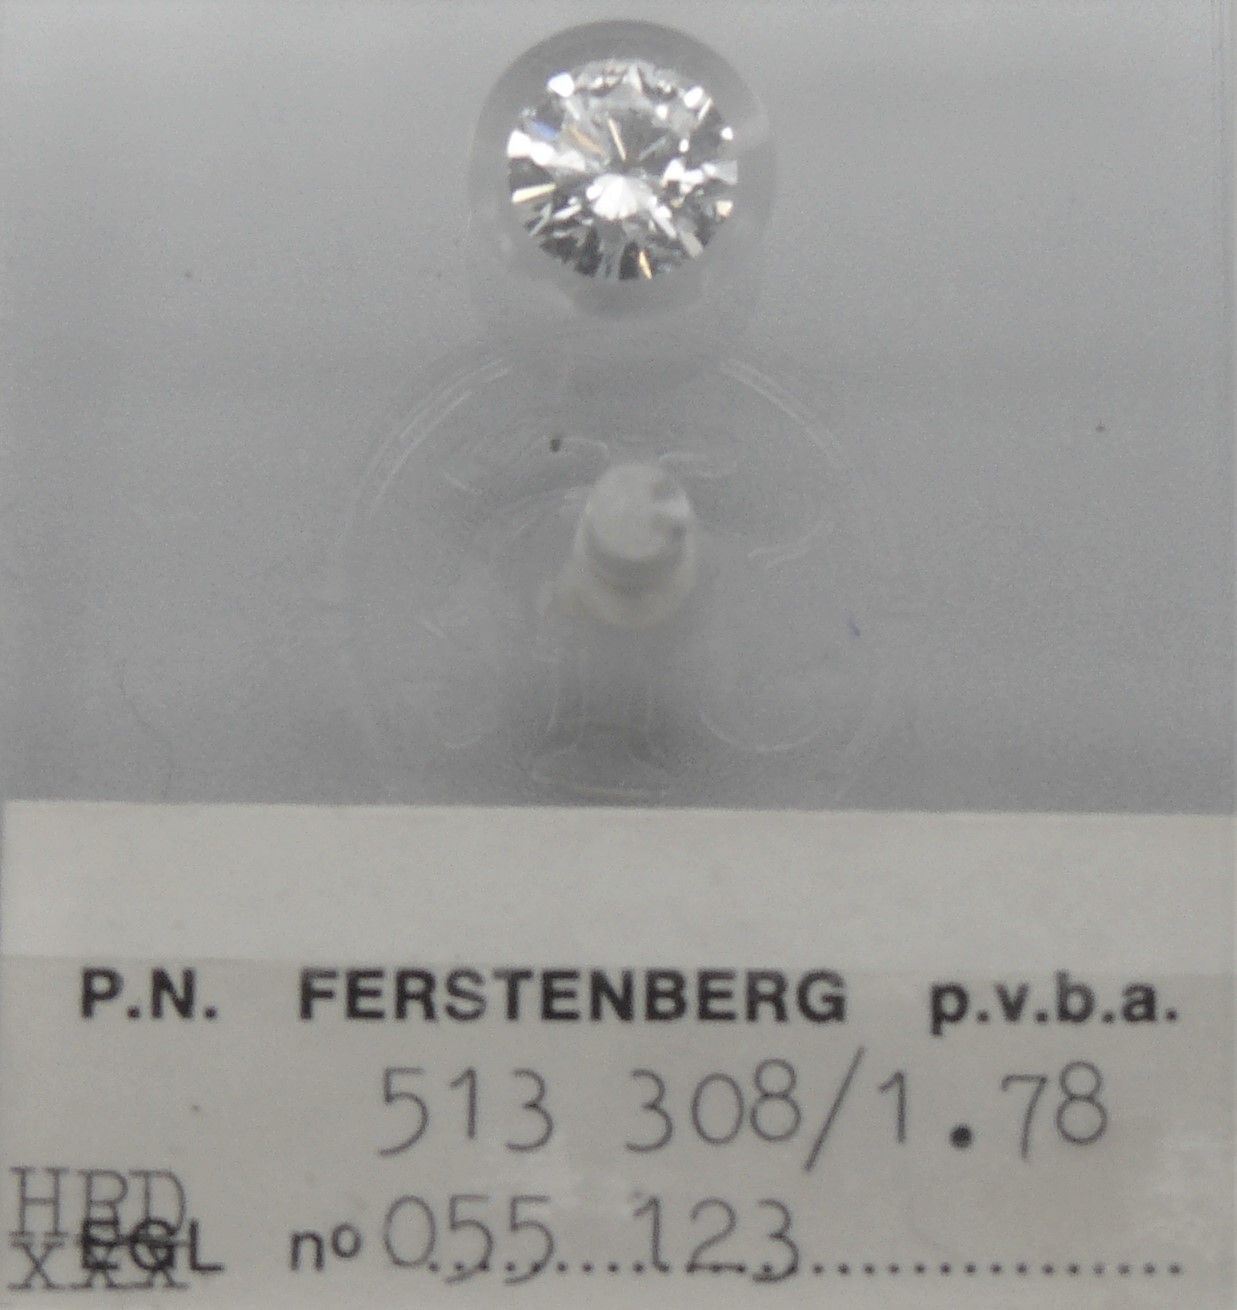 FERSTENBERG un diamante nº 513 308, bajo sello: peso 1,78 quilates, talla brilla&hellip;